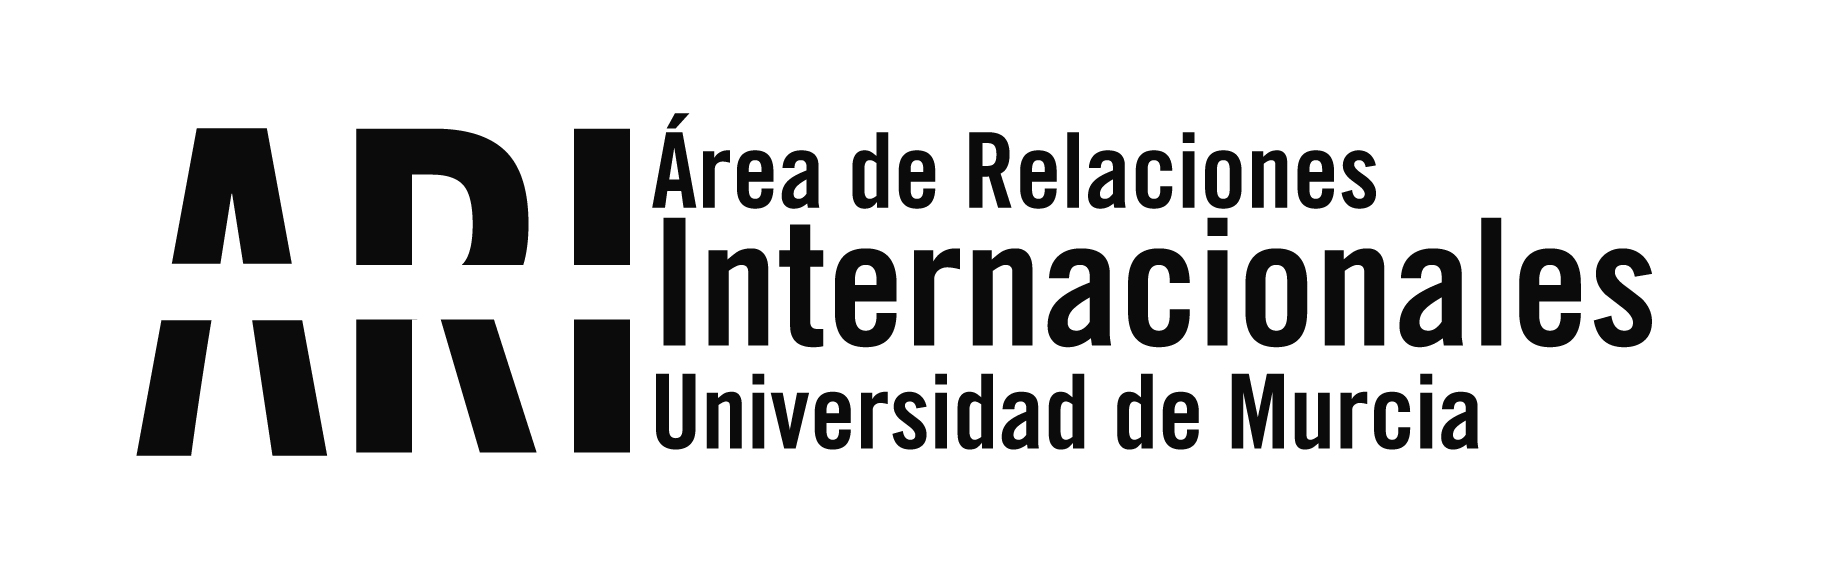 Cierre del Servicio de Movilidad Internacional de la UMU verano 2020 - Área de Relaciones Internacionales